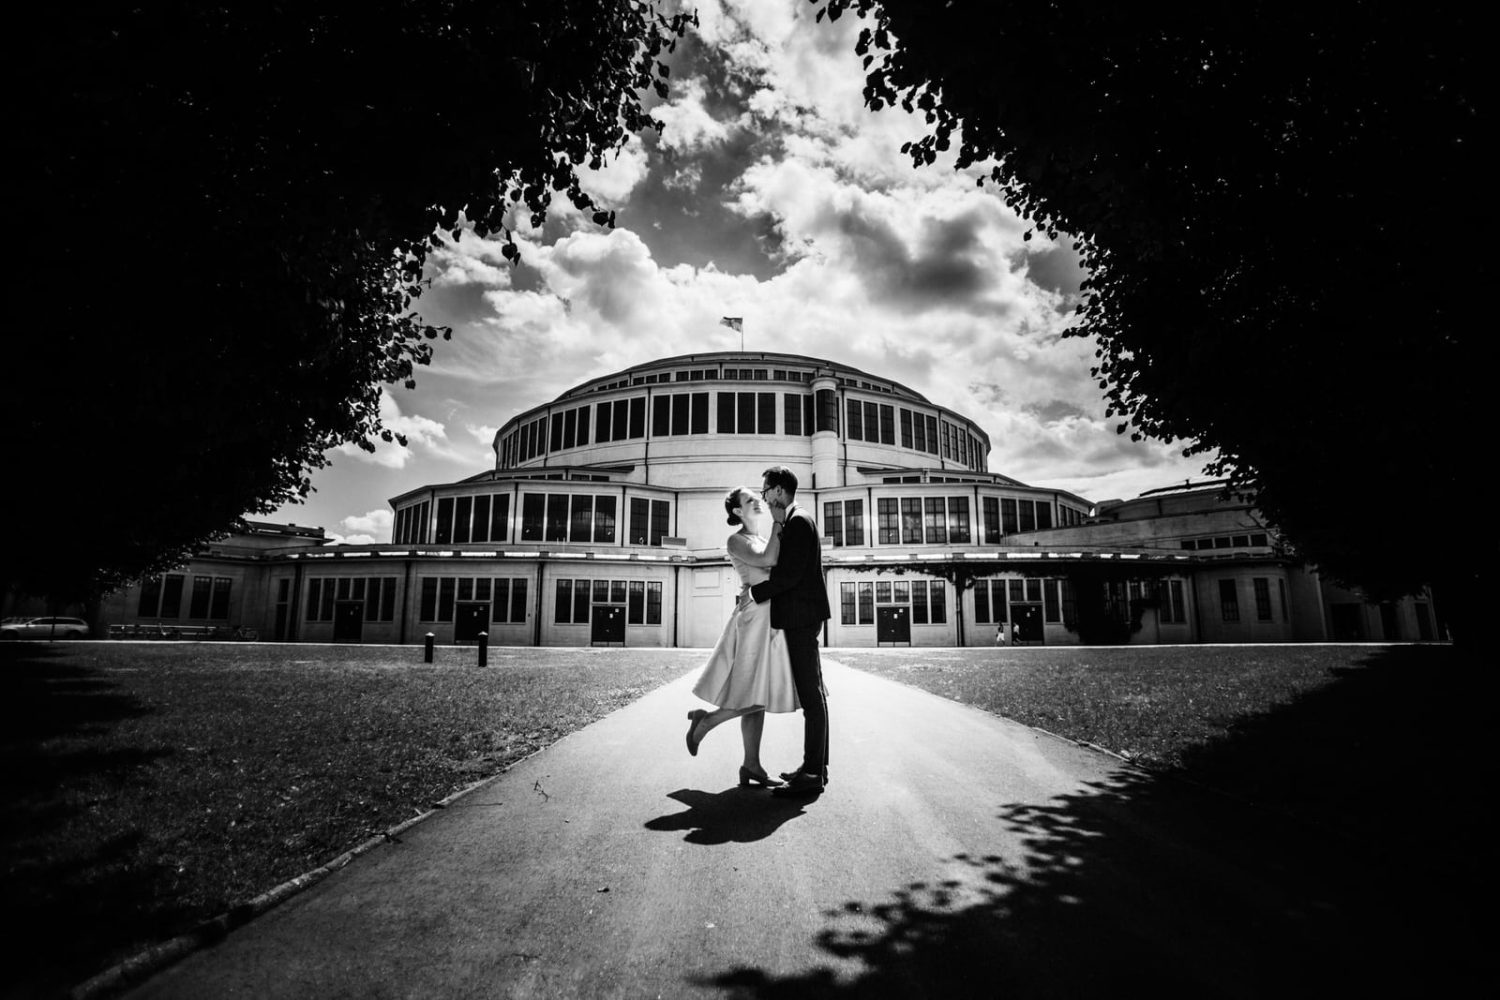 fotografia ślubna - portfolio zdjęć ślubnych